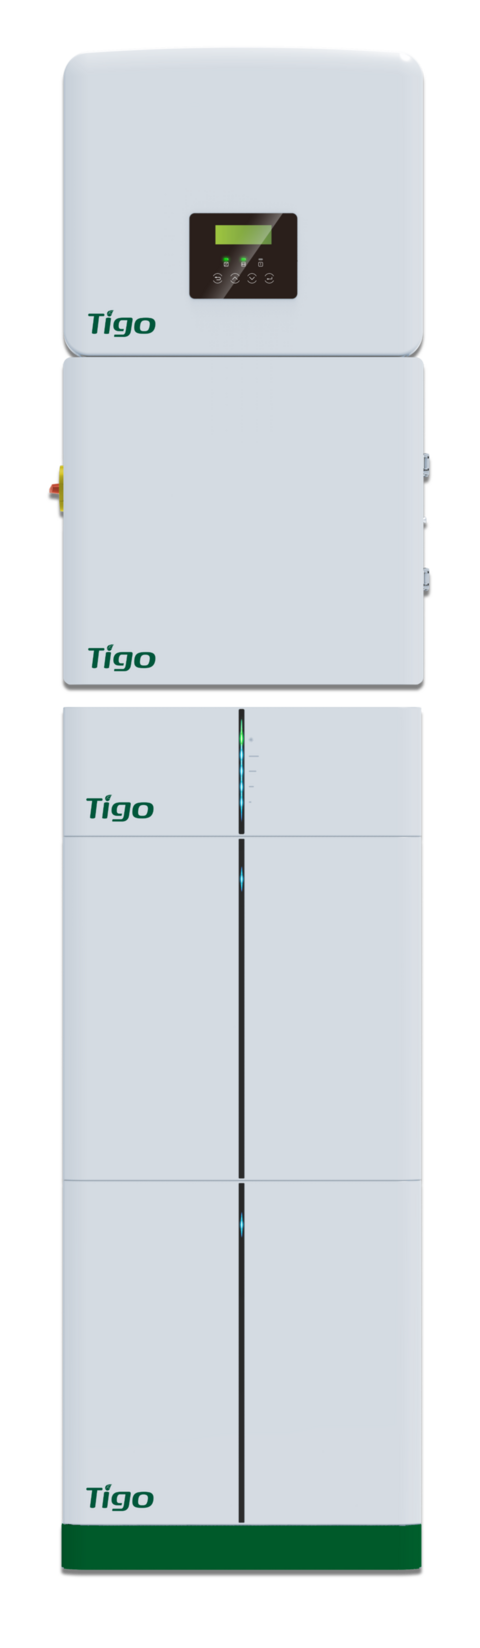 Tigo EI three-phase - Coenergia distributor.jpeg